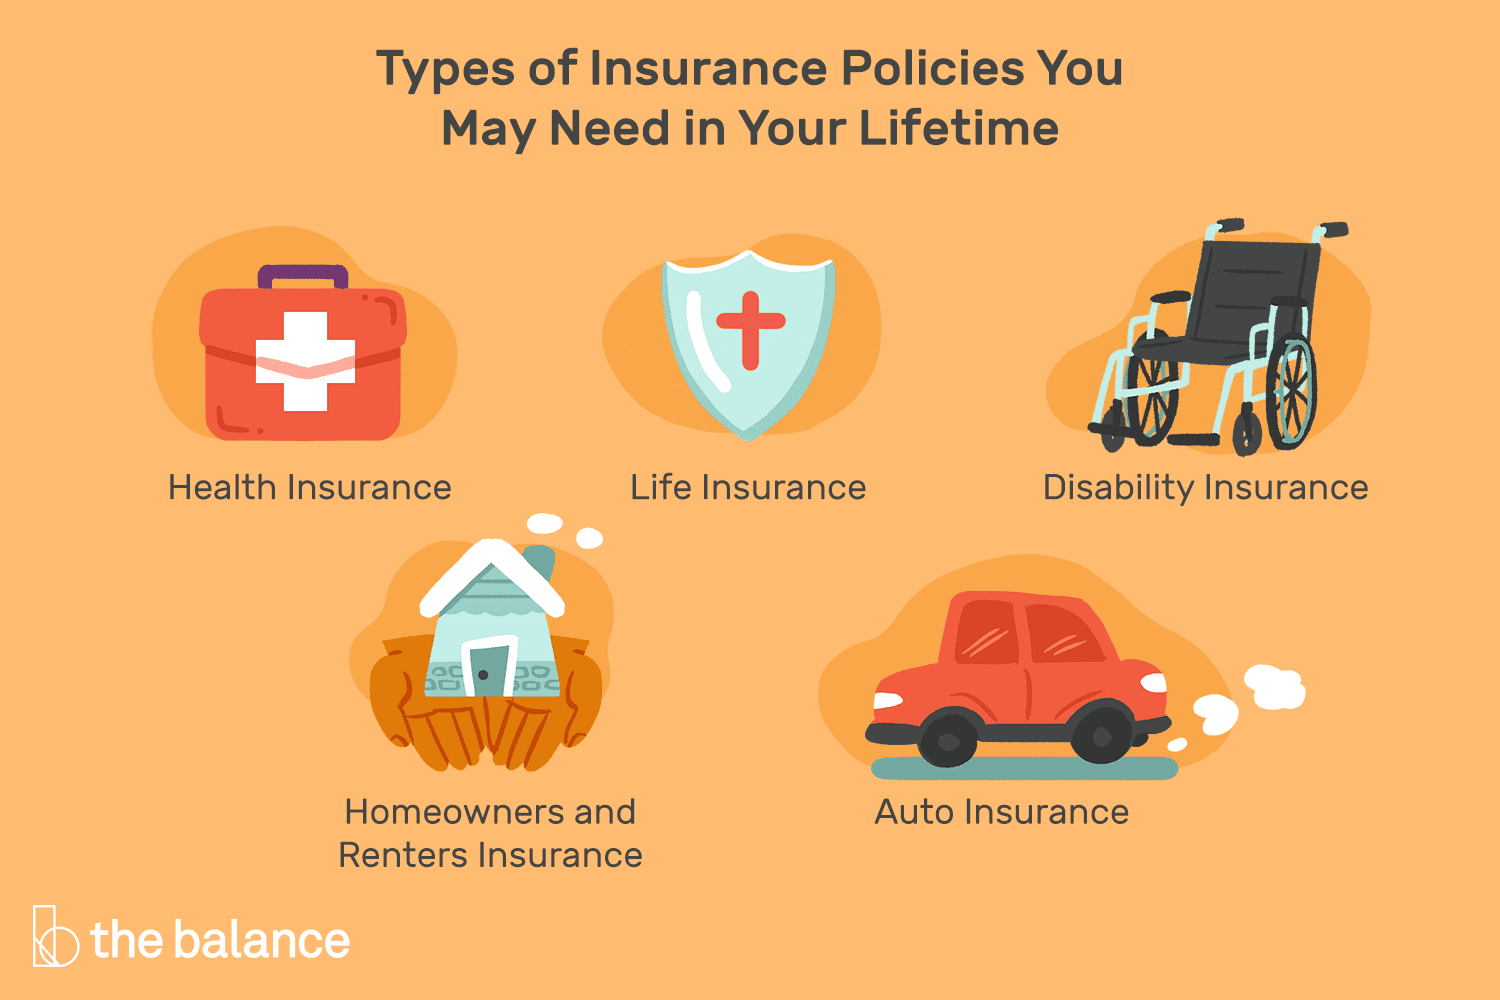 五个医疗图标代表了你一生中可能需要的保险政策类型:健康保险、人寿保险、残疾保险、房屋和租赁保险以及汽车保险＂class=